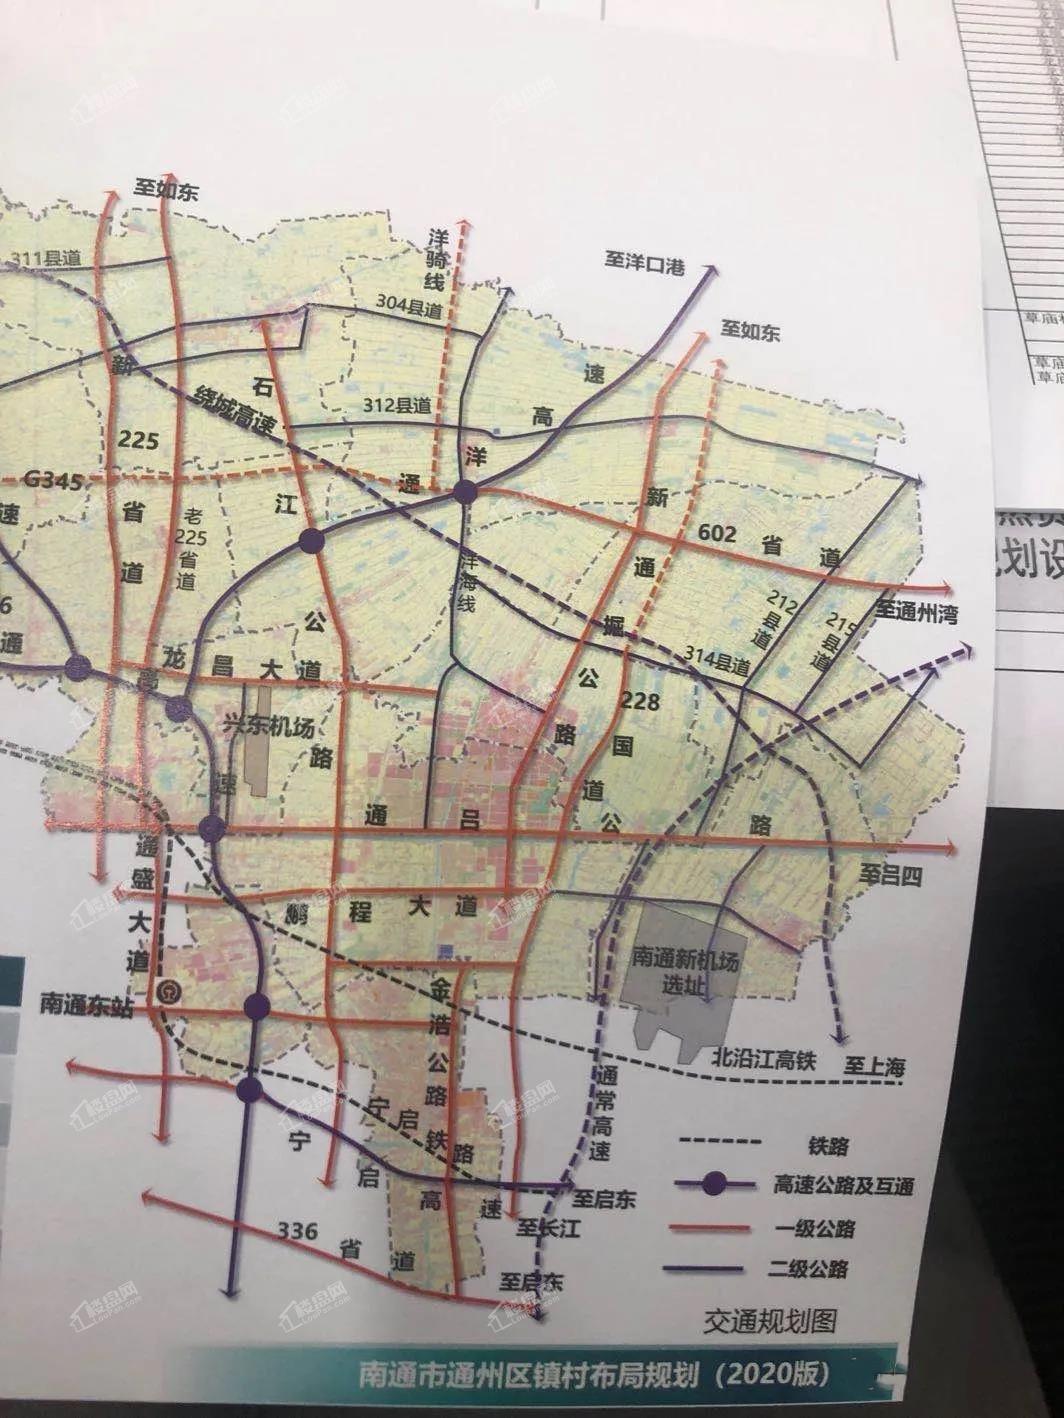 通州区镇村布局规划(2020版)